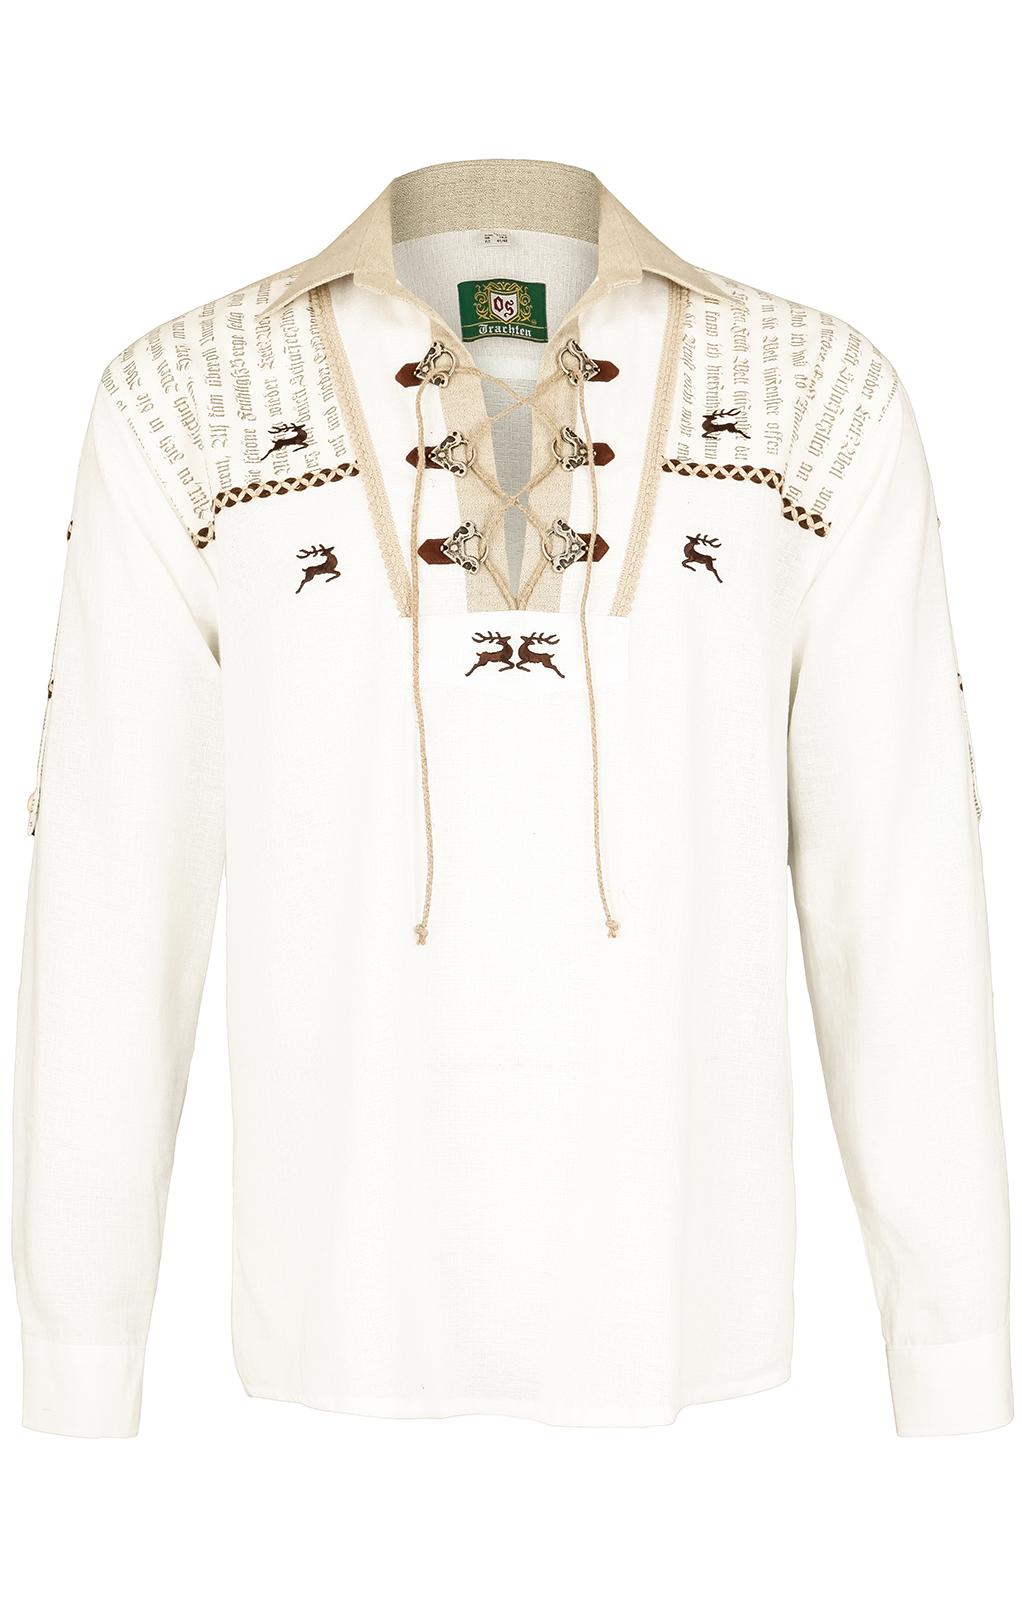 weitere Bilder von German traditional shirt BORRIS white